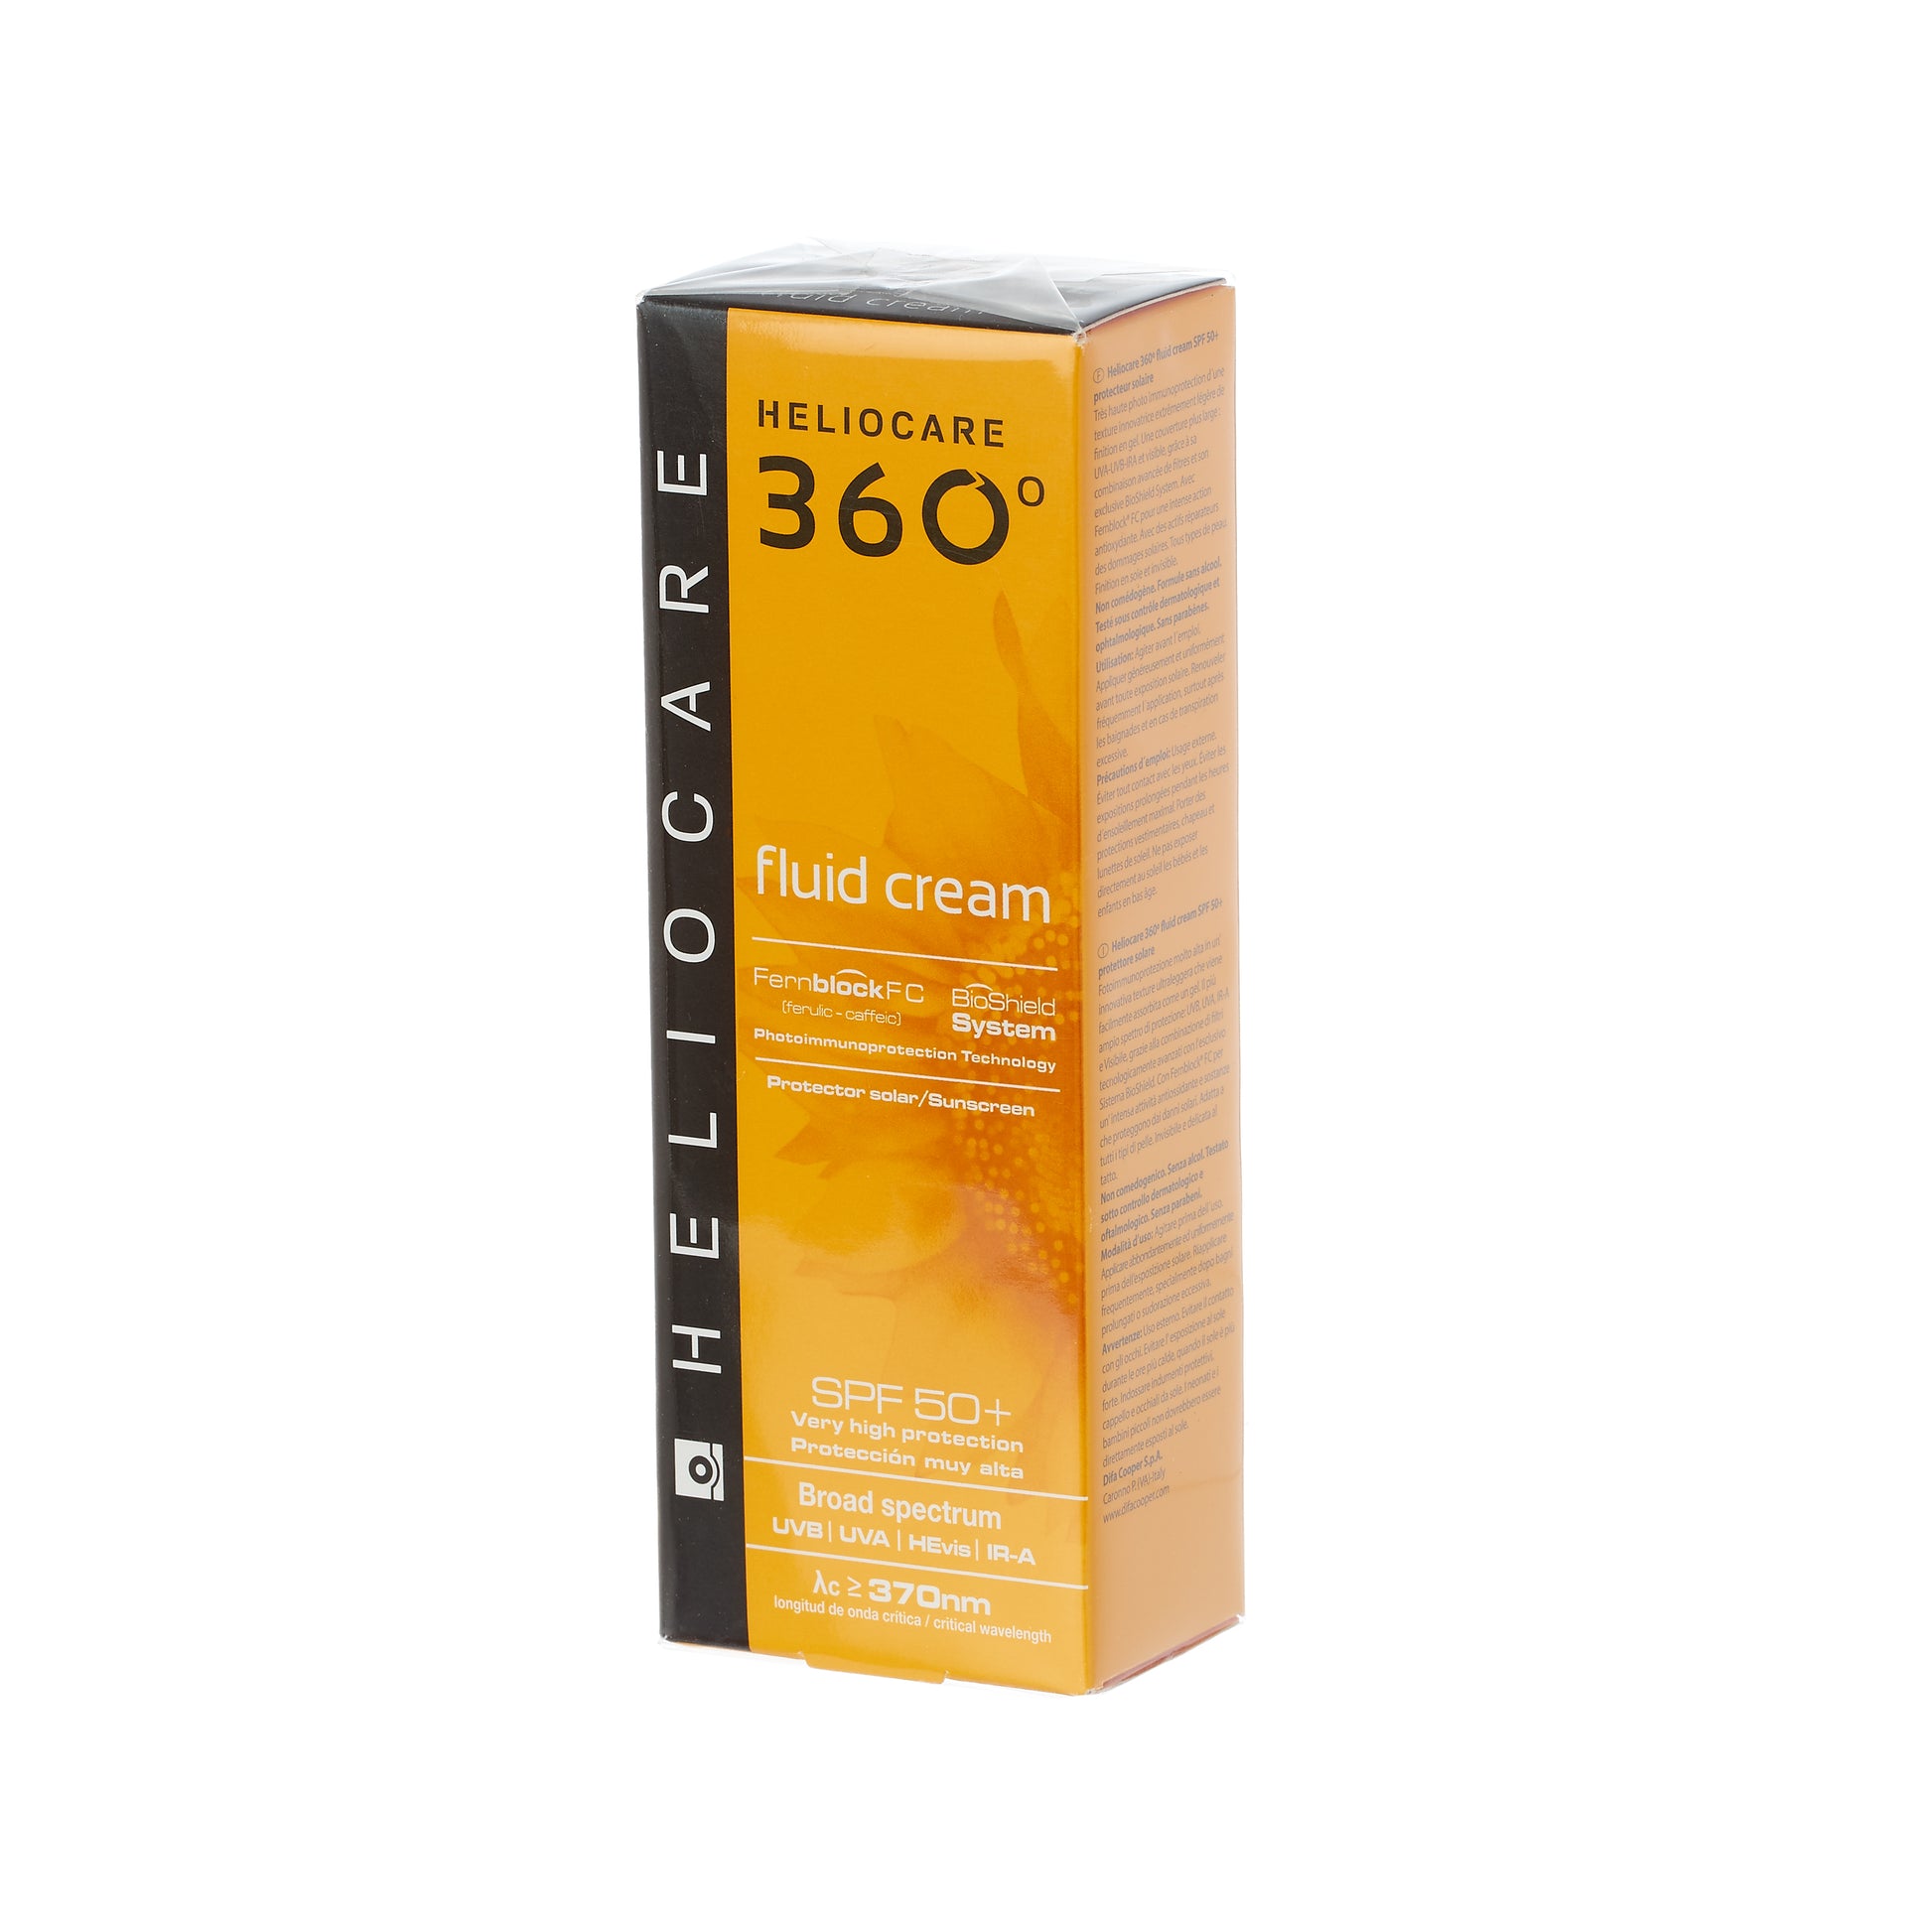 Heliocare 360˚ Fluid Cream SPF 50+